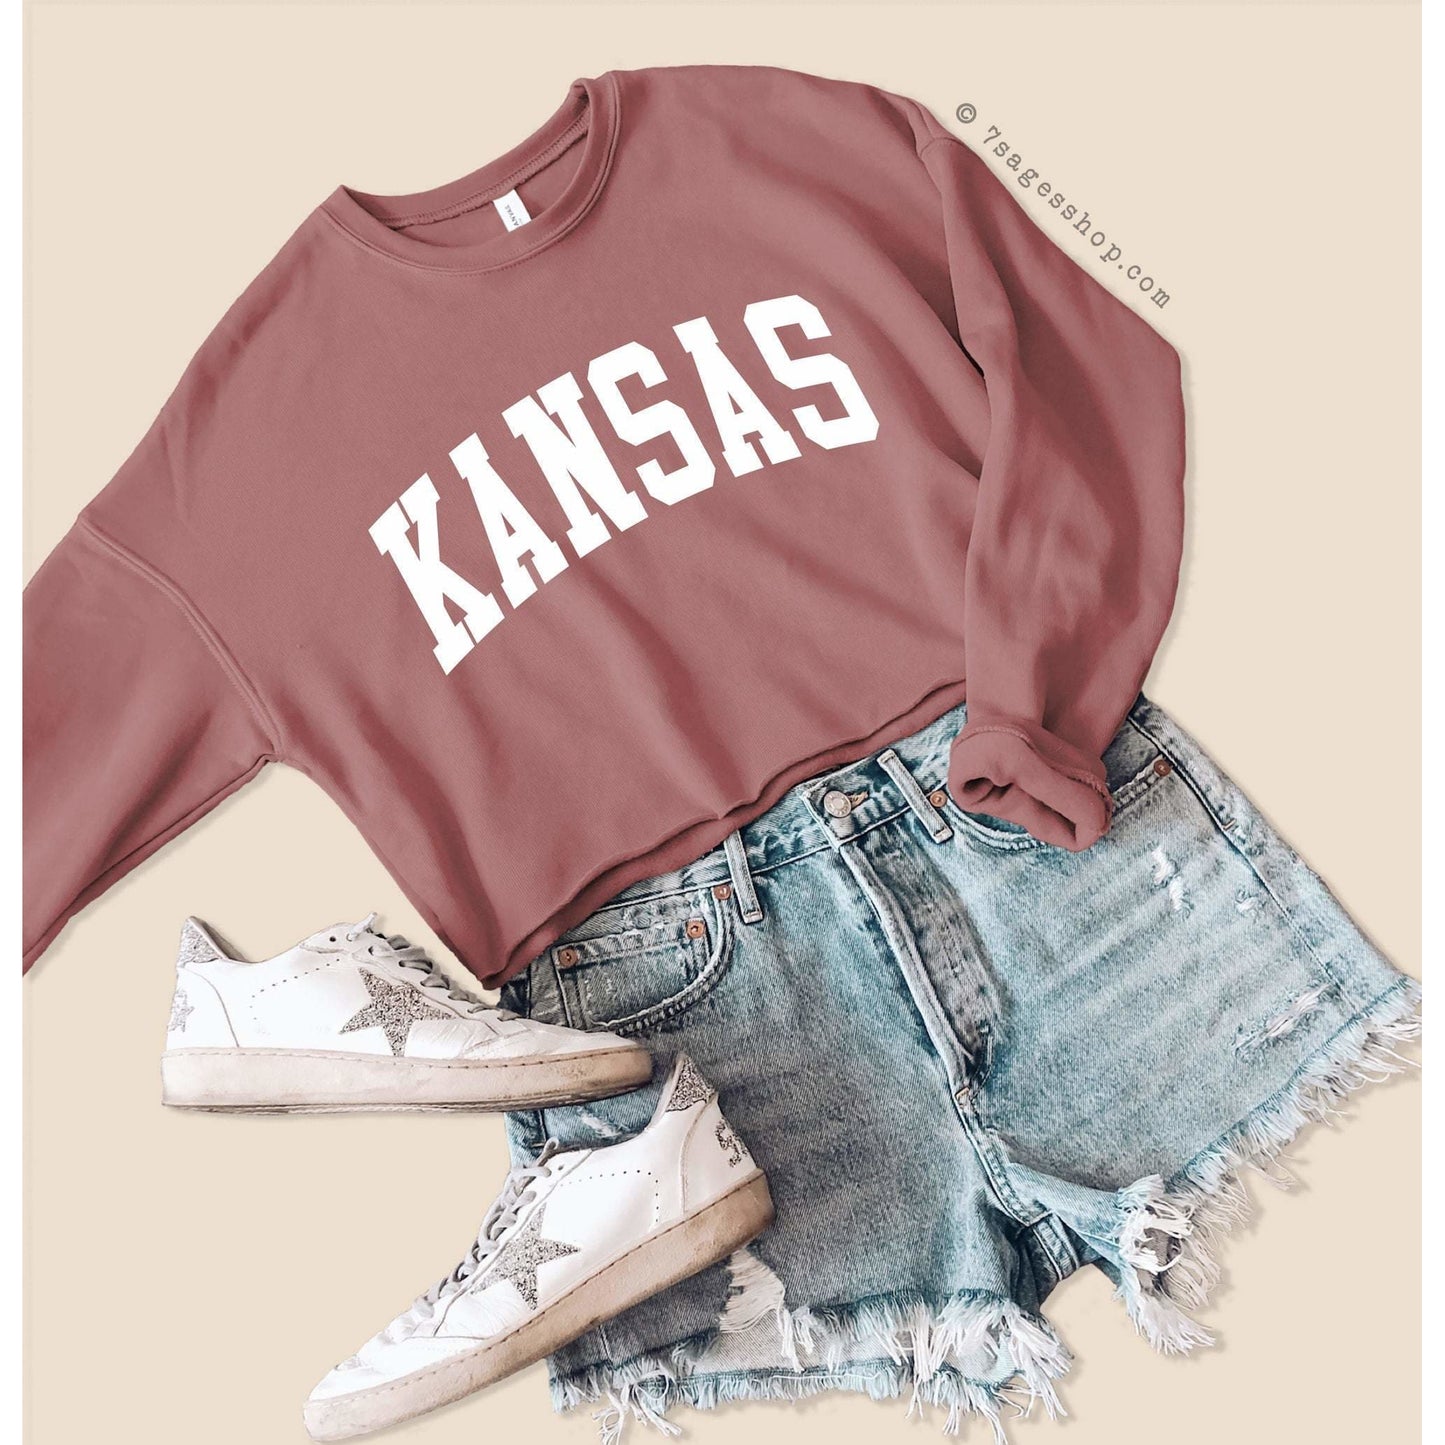 Kansas Sweatshirt - Kansas Cropped Sweatshirt - Kansas Shirts - University of Kansas Crop Top - Fleece Sweatshirt